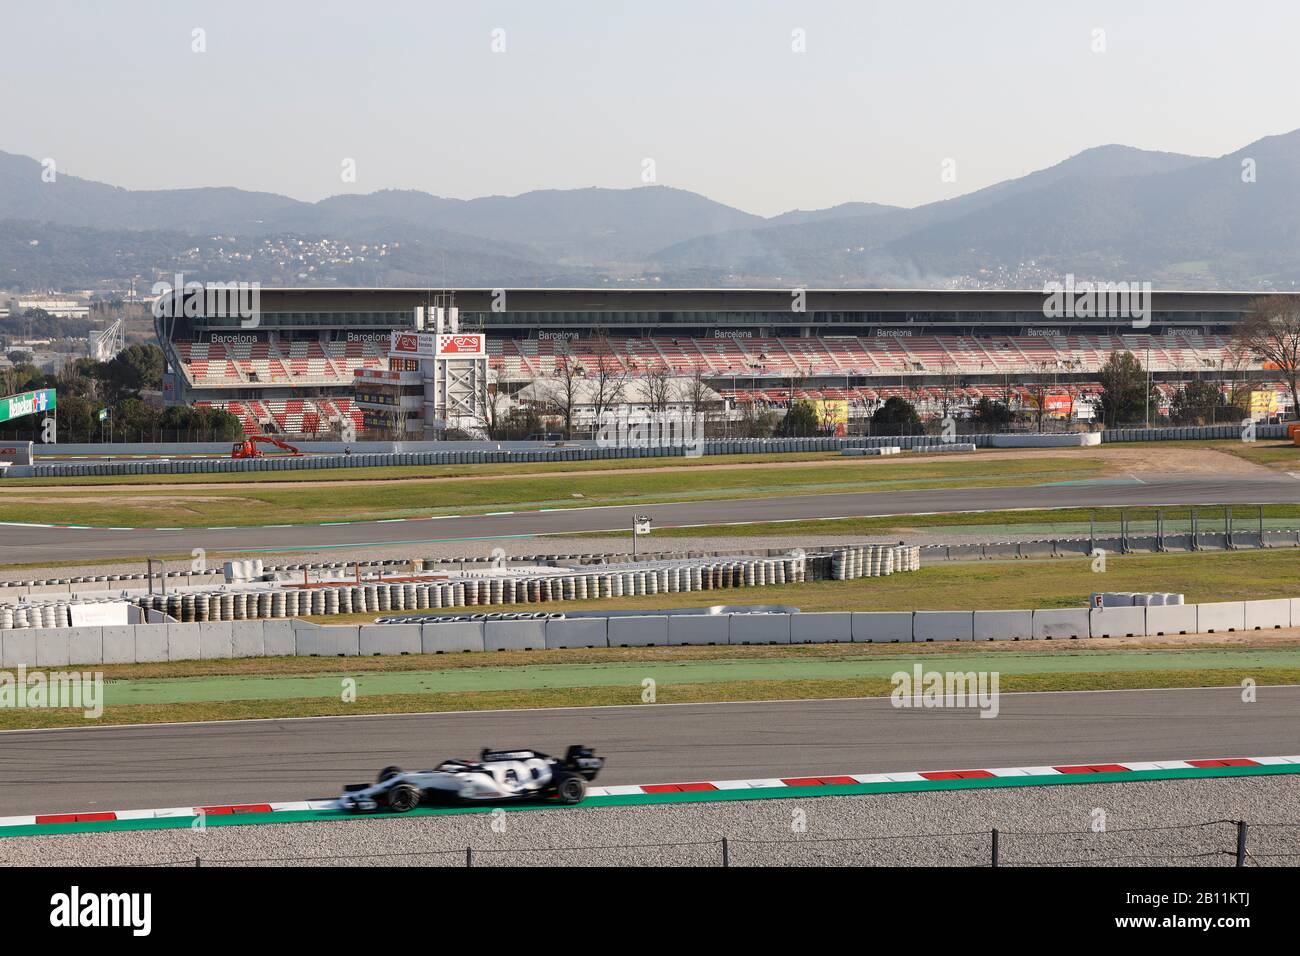 F1 pruebas invernales en el circuito Montmelo, Barcelona, España Foto de stock